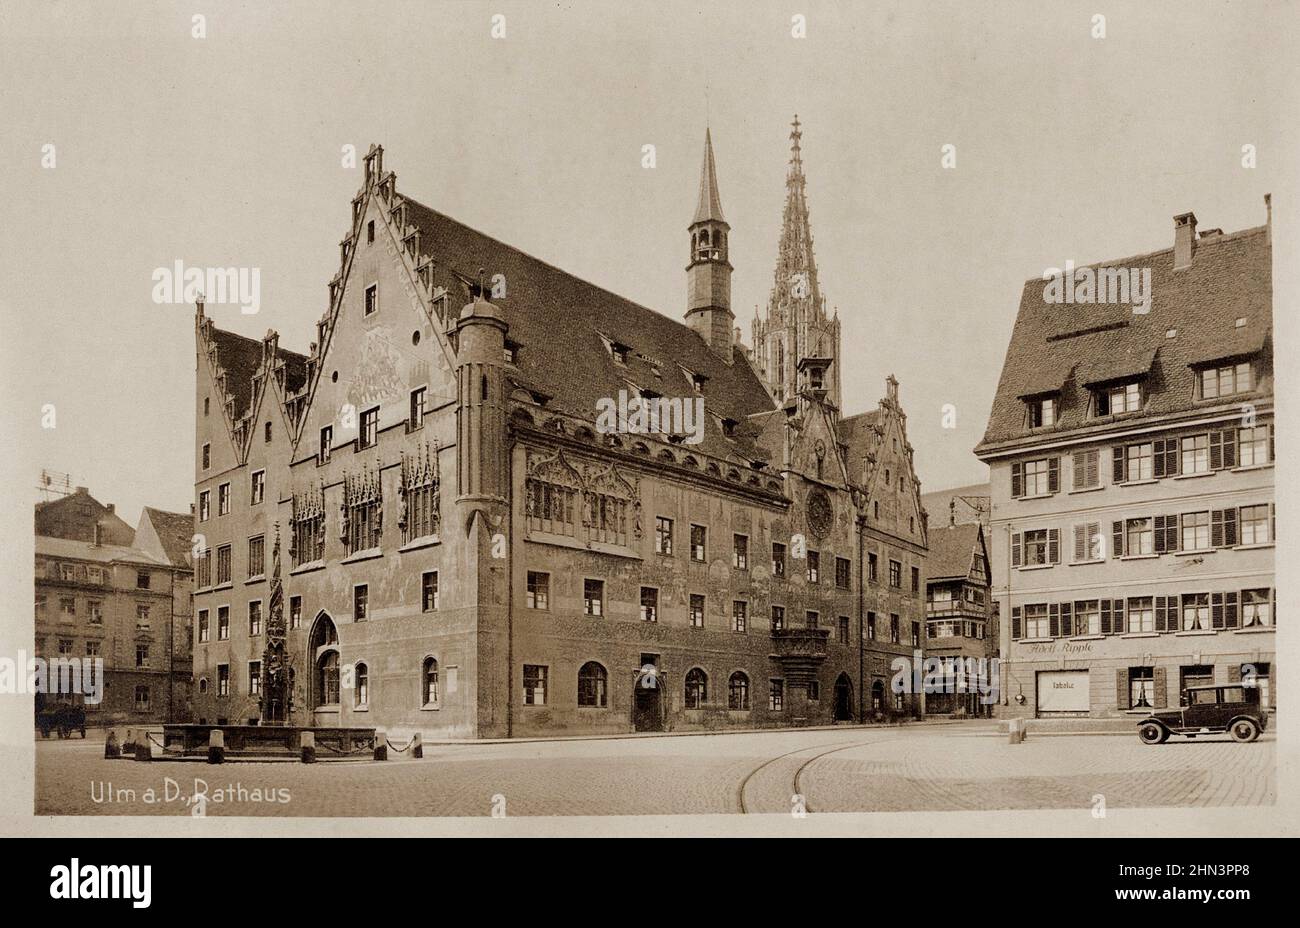 Vintage-Foto von Ulm, Rathaus. Deutschland. 1920s Eine Stadt im Bundesland Baden-Württemberg, an der Donau gelegen Stockfoto